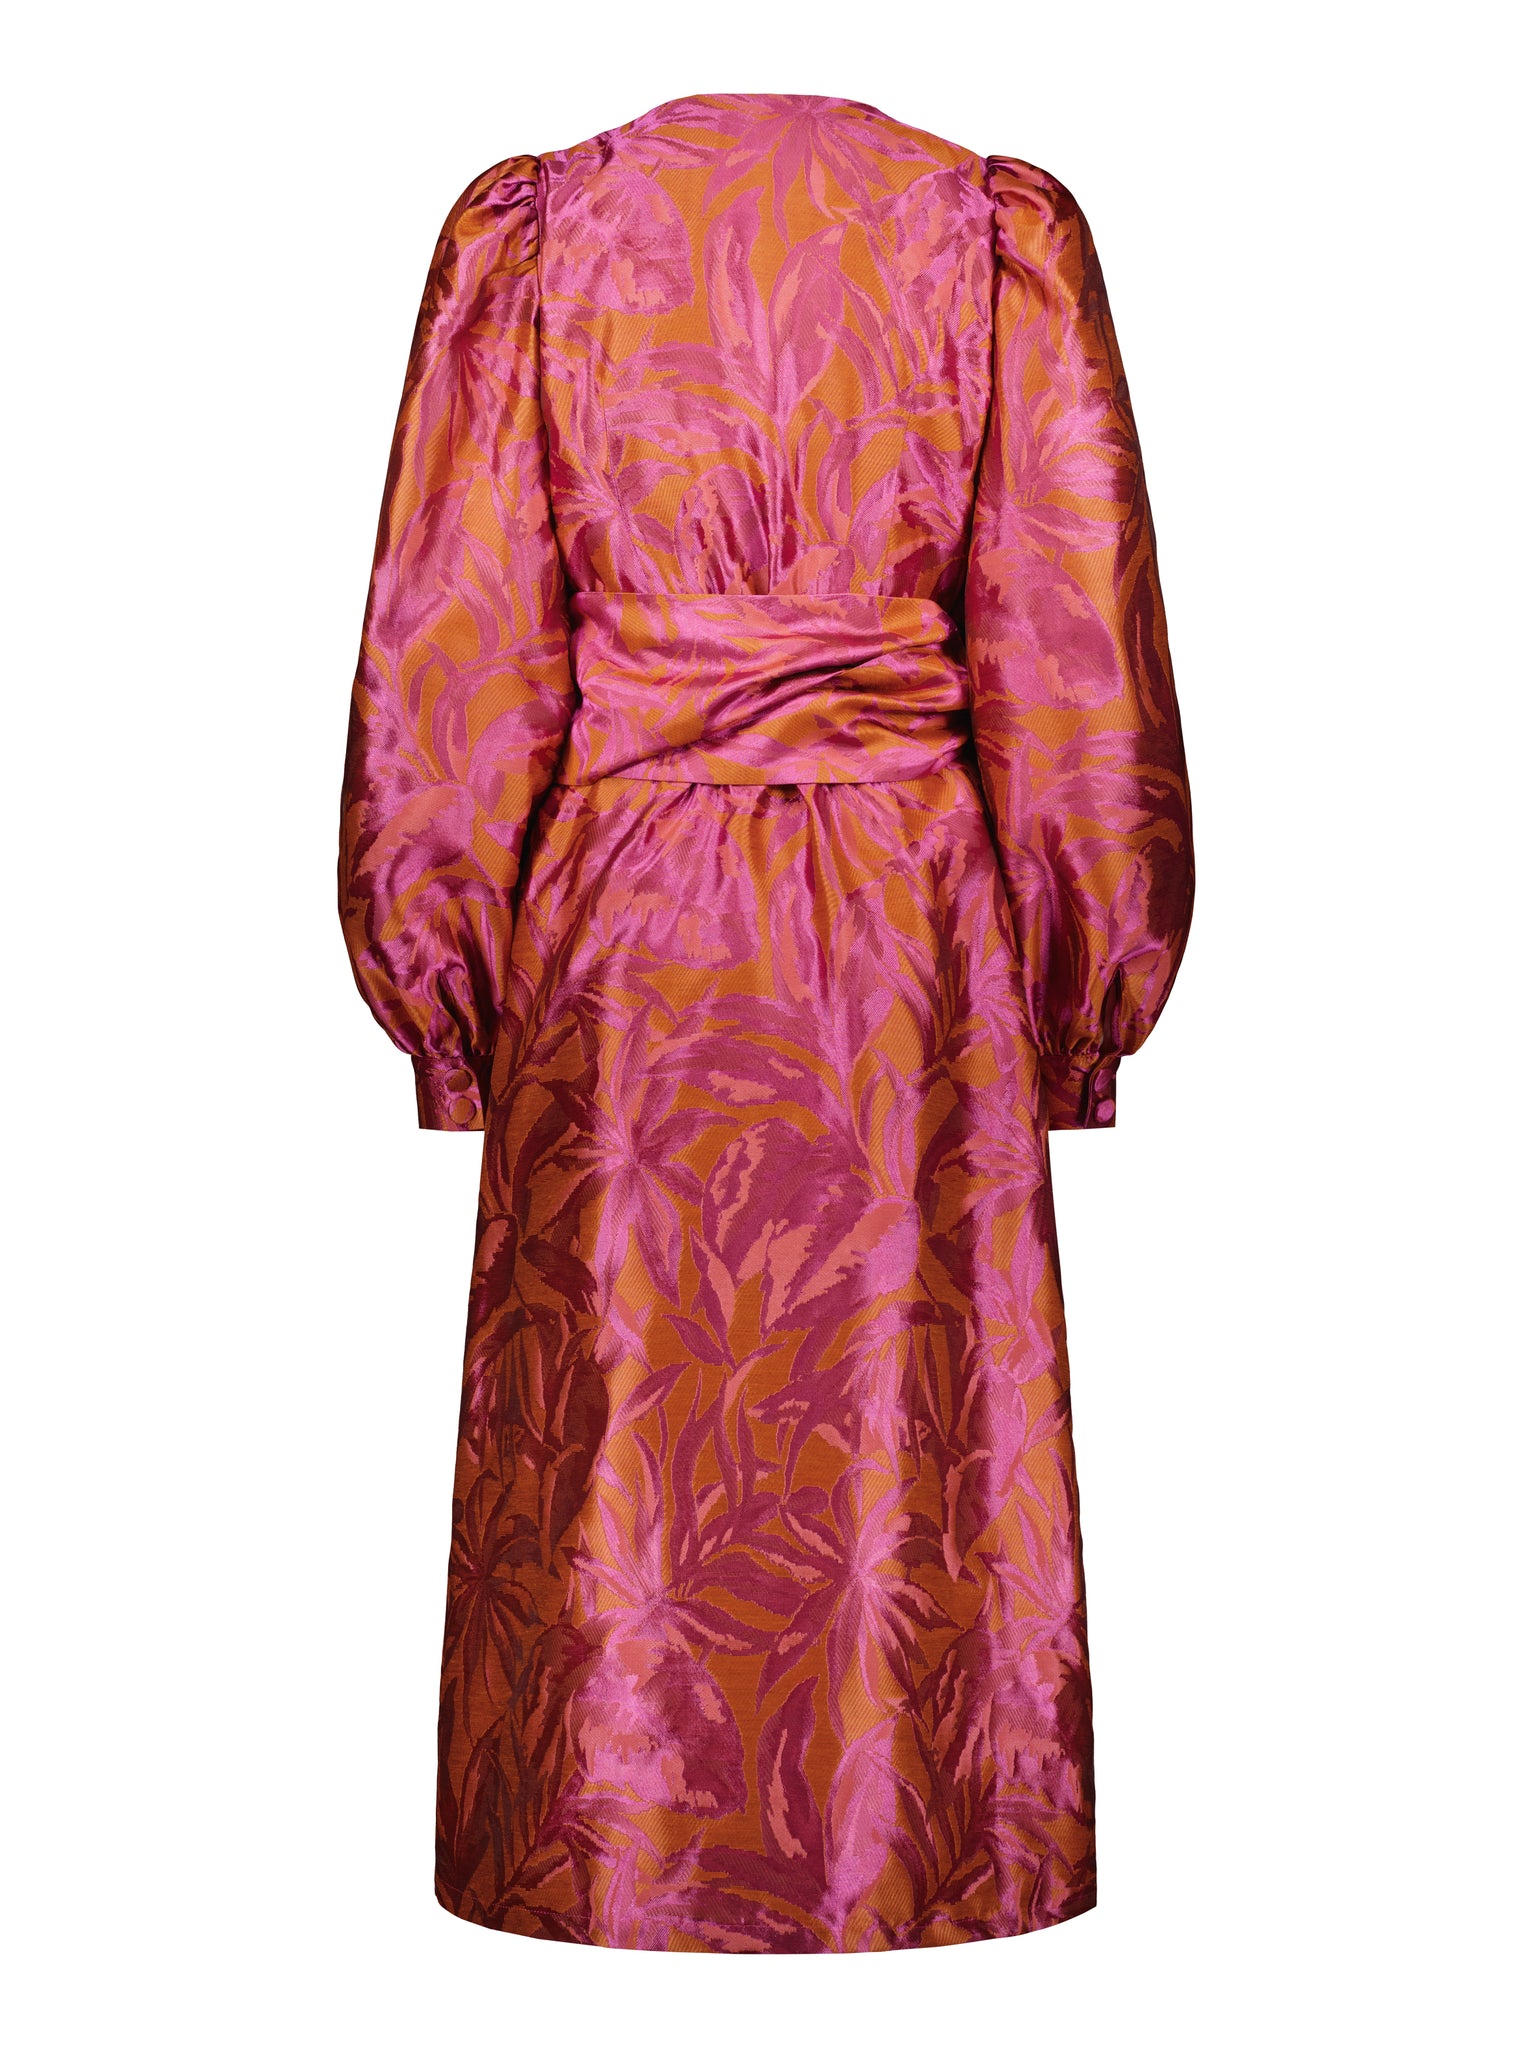 BLAKE WRAP DRESS - Pink orange florals